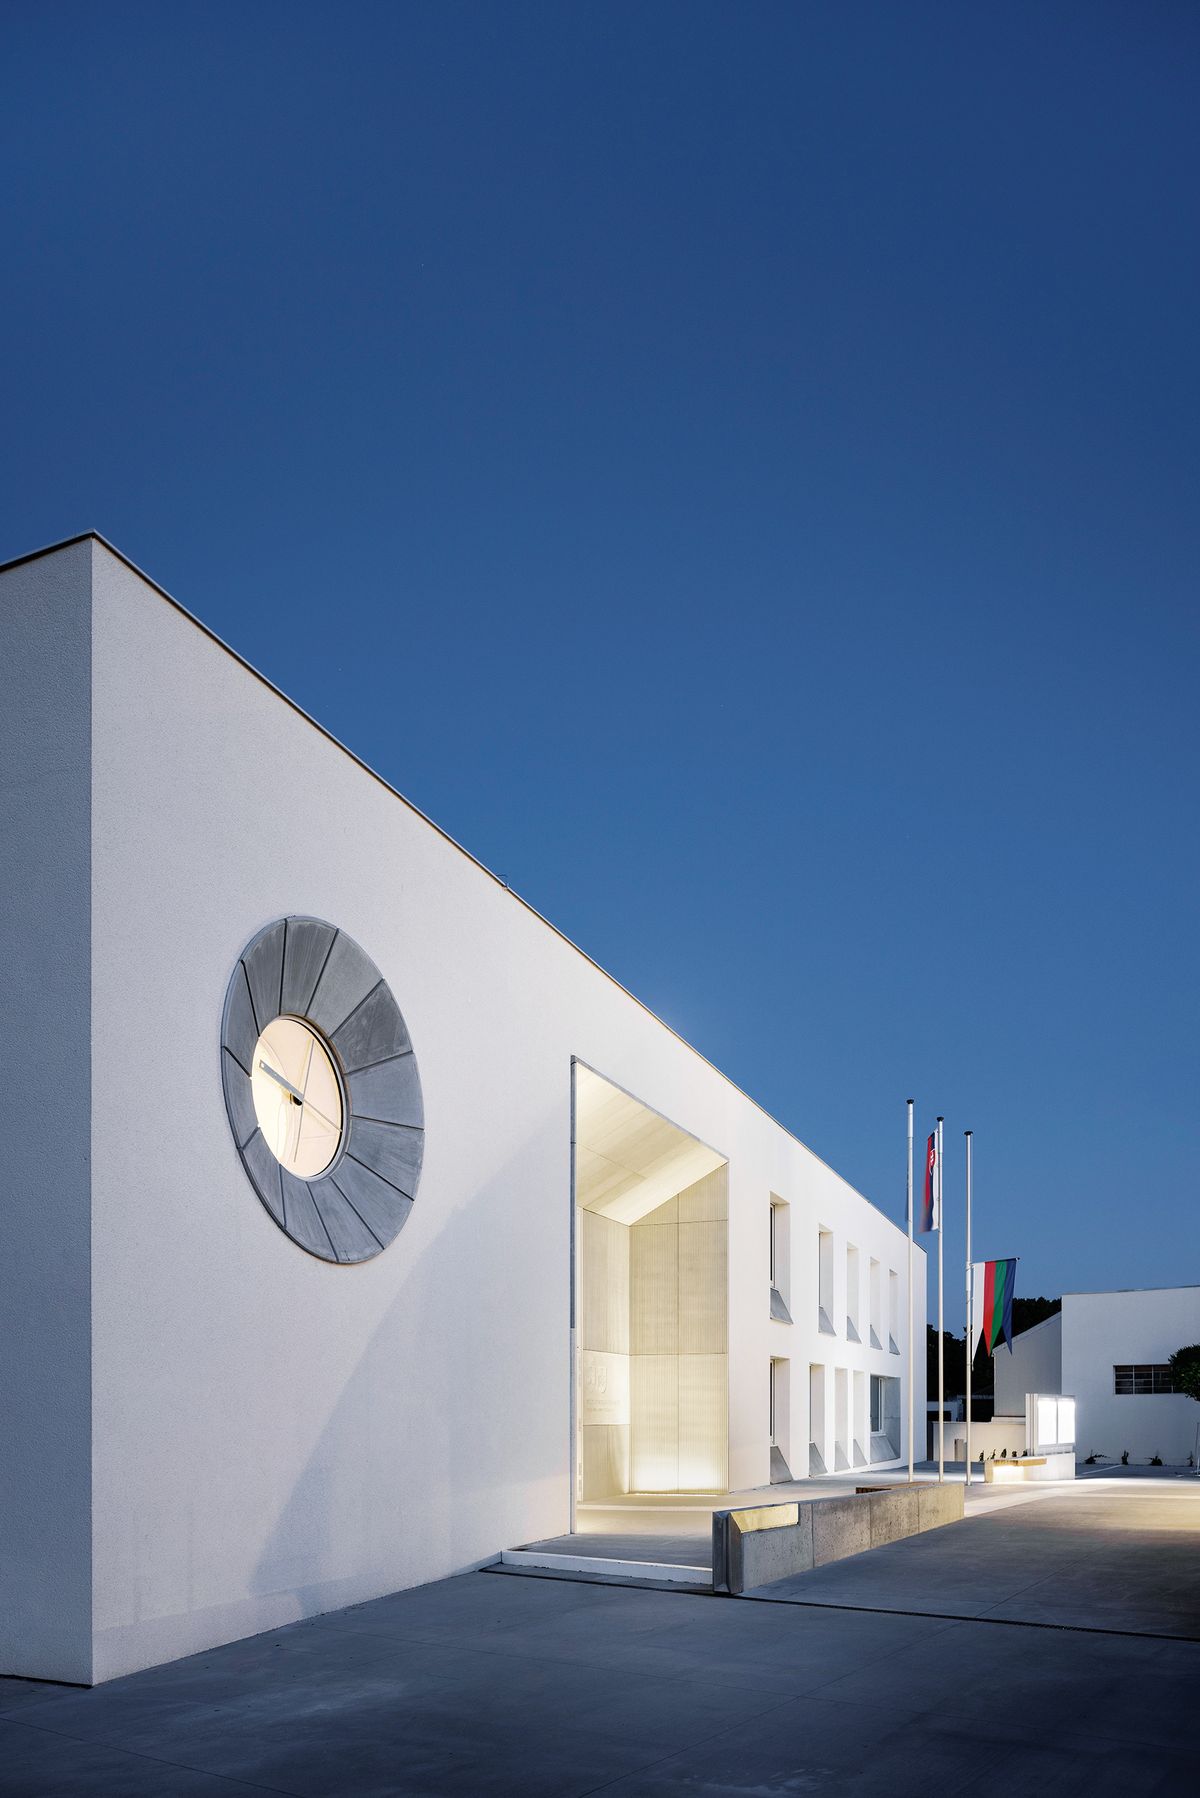 V roku 2014 mesto vypísalo na výstavbu novej radnice najväčšiu architektonickú súťaž od vzniku Slovenska. Víťazmi sa stali architekti z prešovského štúdia zerozero.